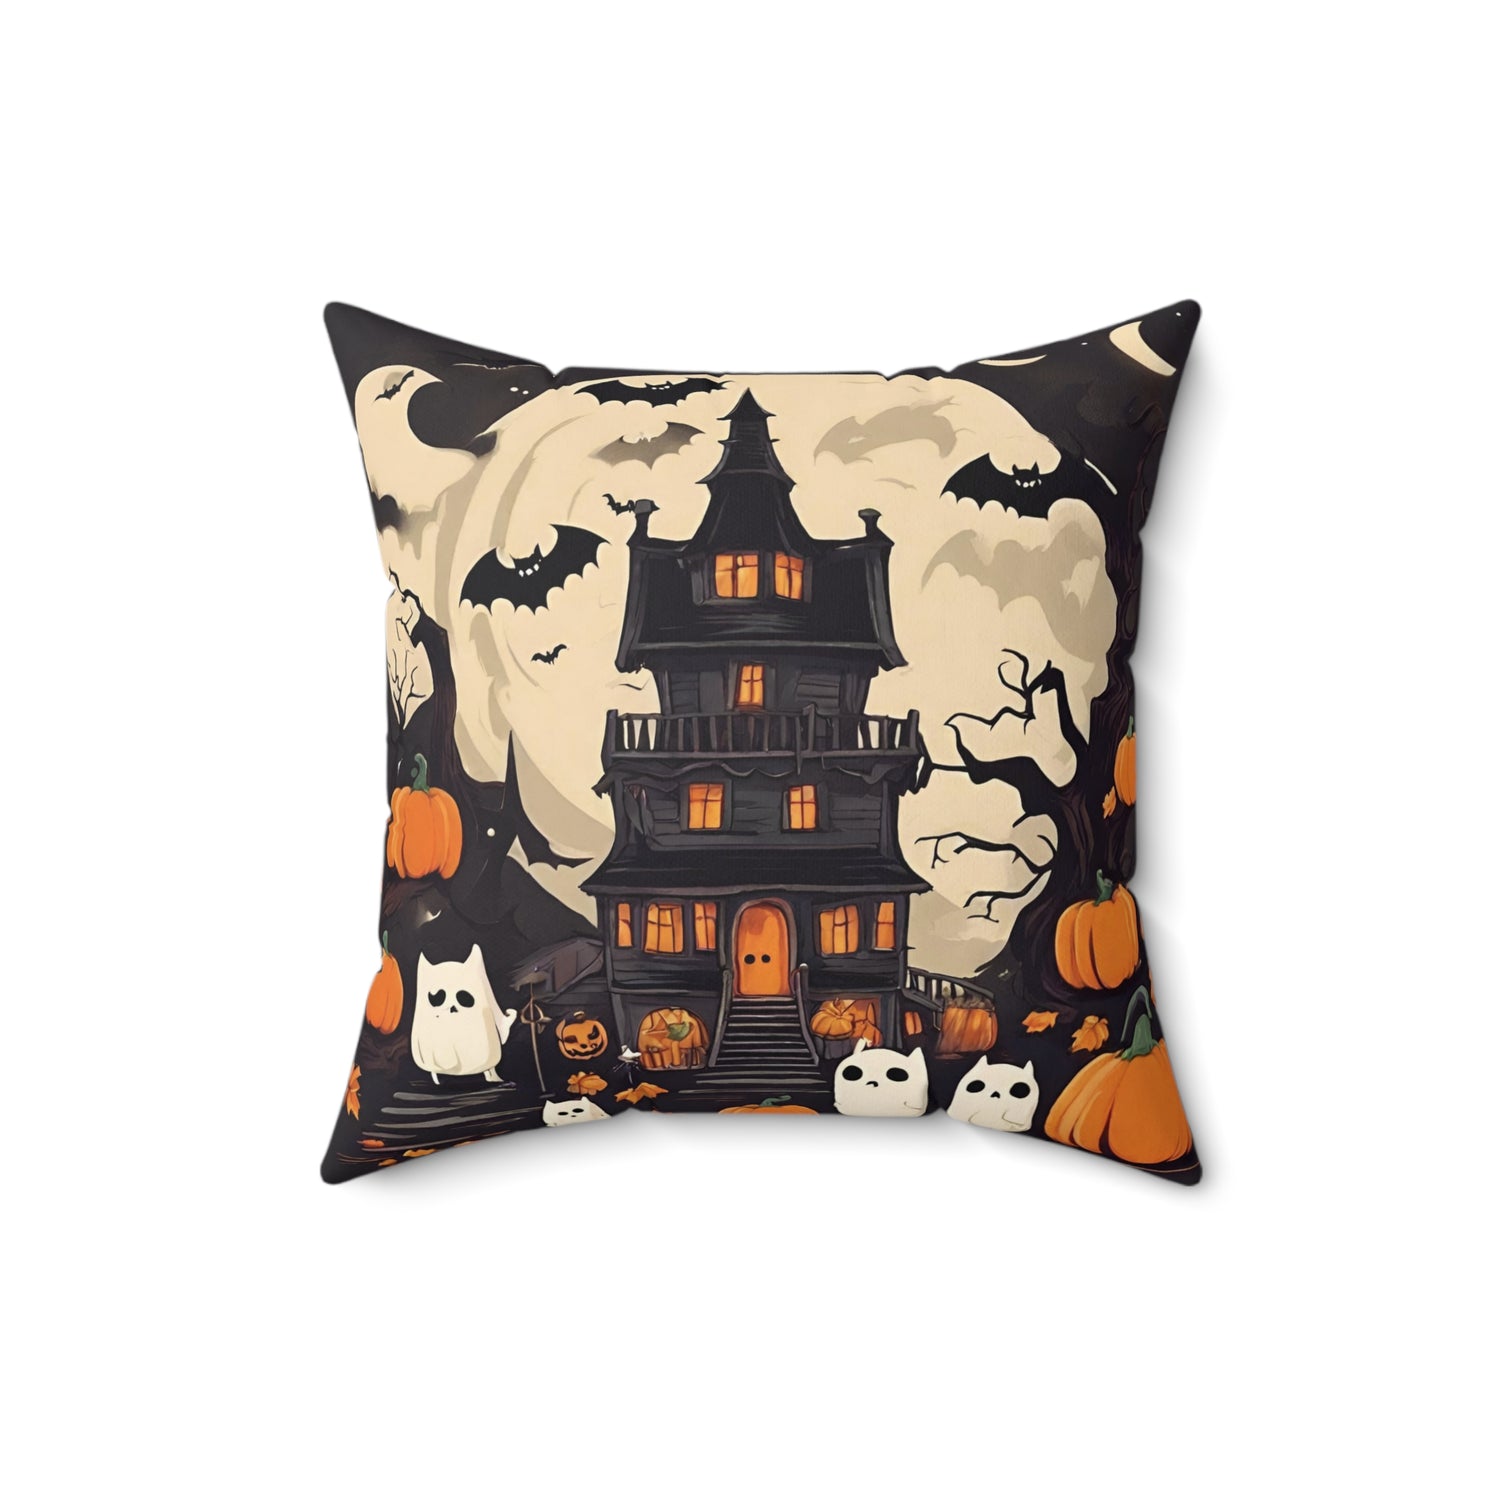 Throw Pillows | Halloween Home Décor 16" × 16" Home Decor Petrova Designs